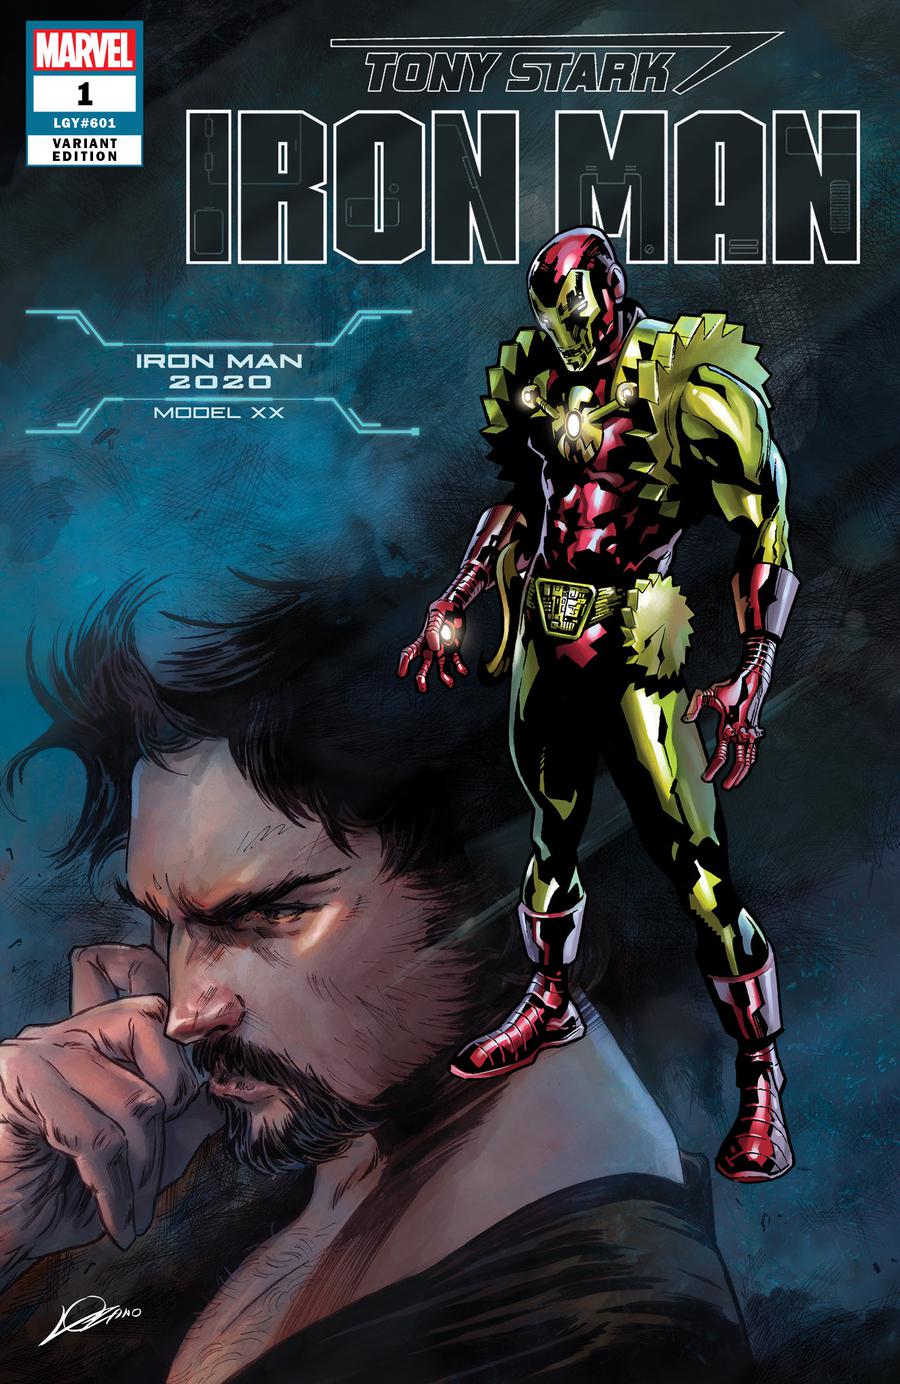 Tony Stark Iron Man #1 Cover K Variant Alexander Lozano & Valerio Schiti Model XX Iron Man 2020 Armor Cover